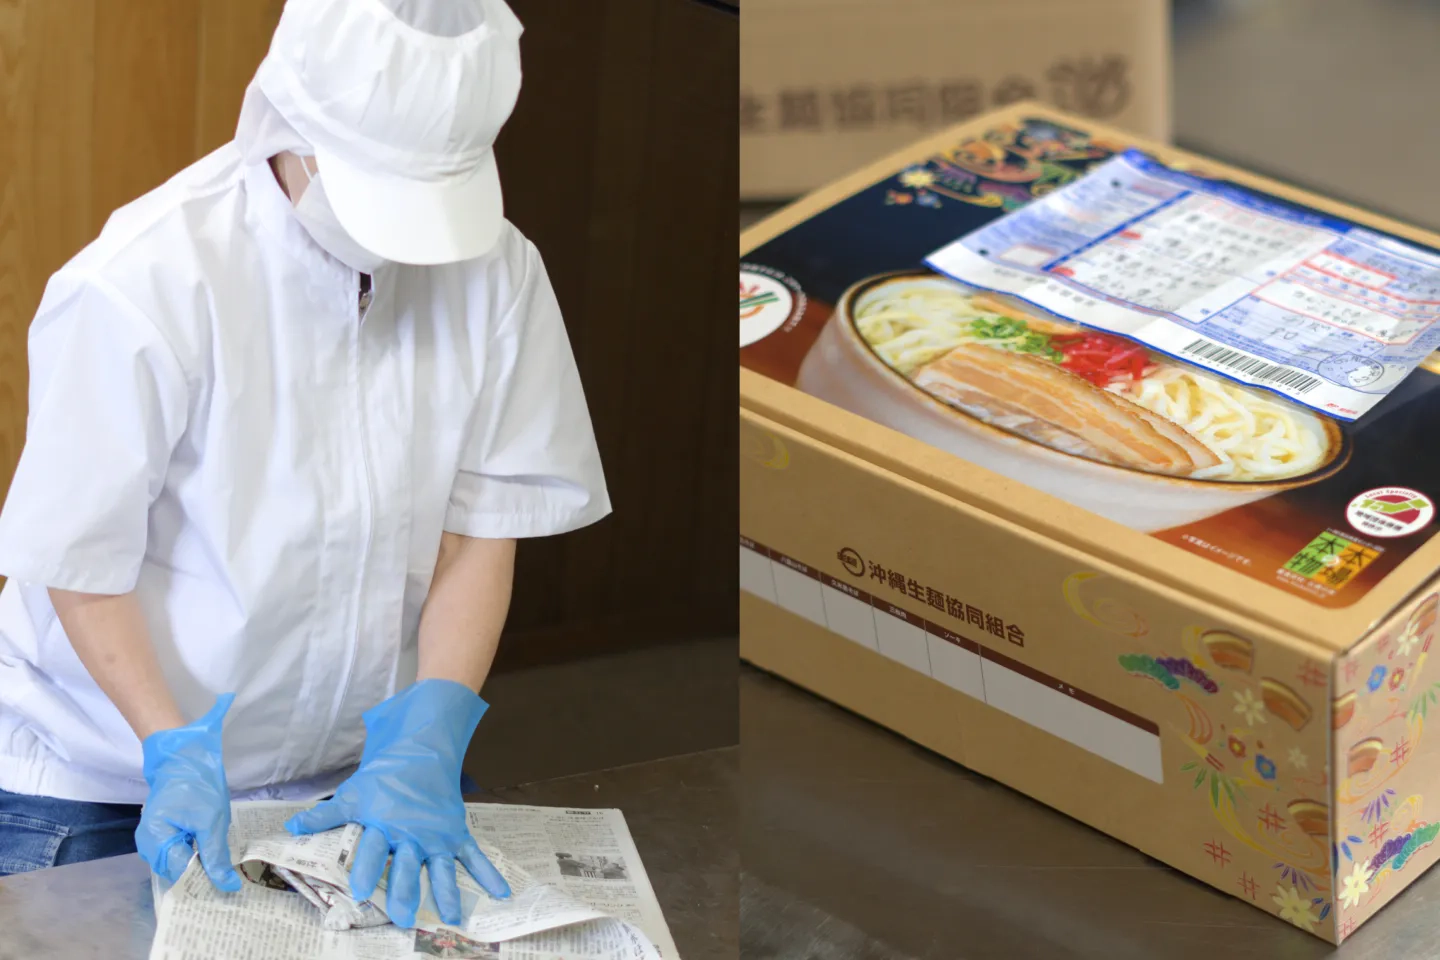 伊佐製麺所の社員と配送商品の写真